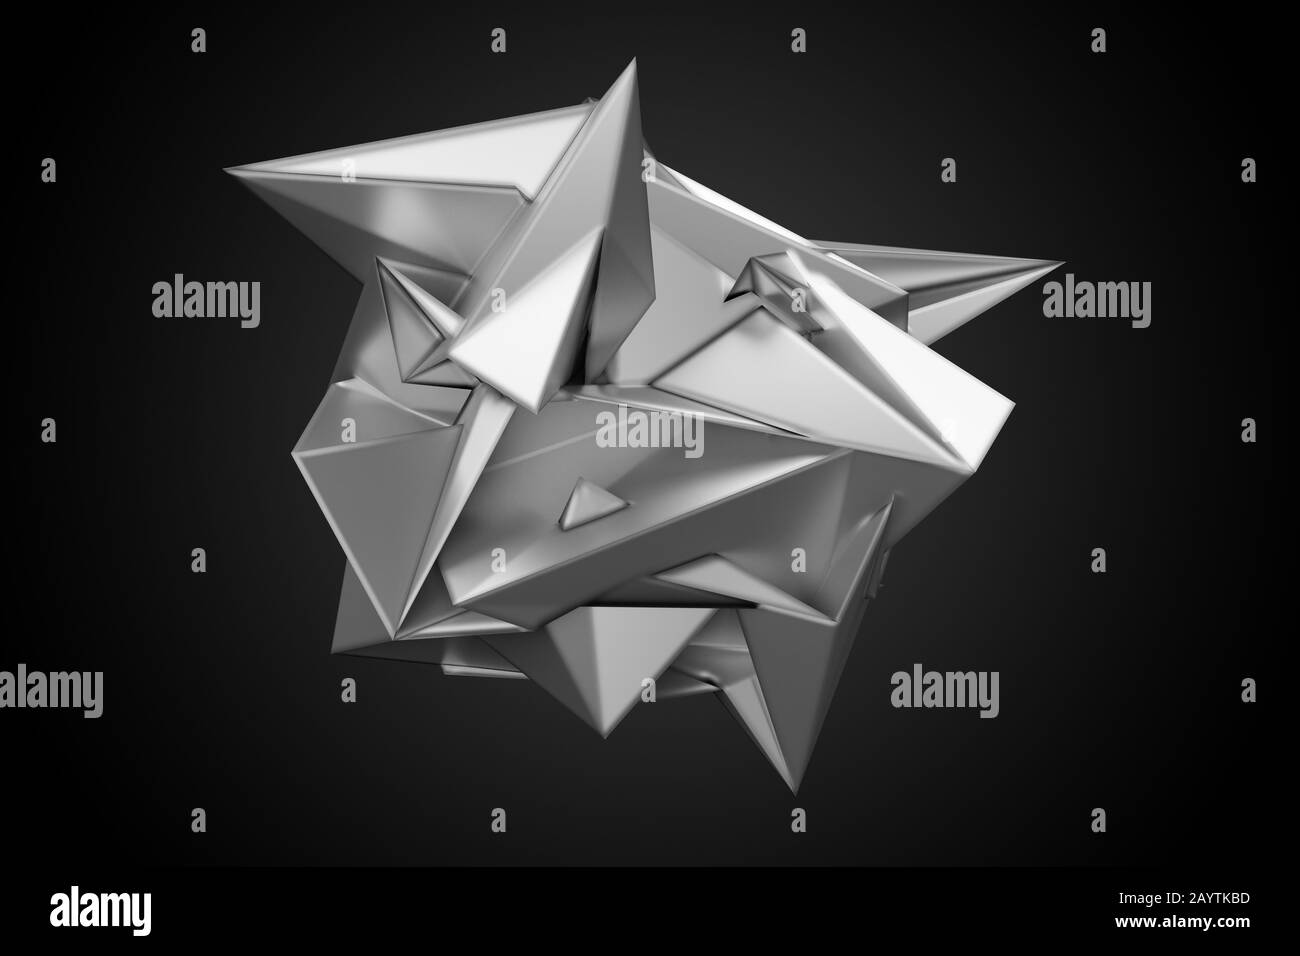 Futuristisches, silbermetallisch glänzendes, abstraktes Objekt mit Spitzen über dunklem Gradientenhintergrund - 3D-Abbildung Stockfoto